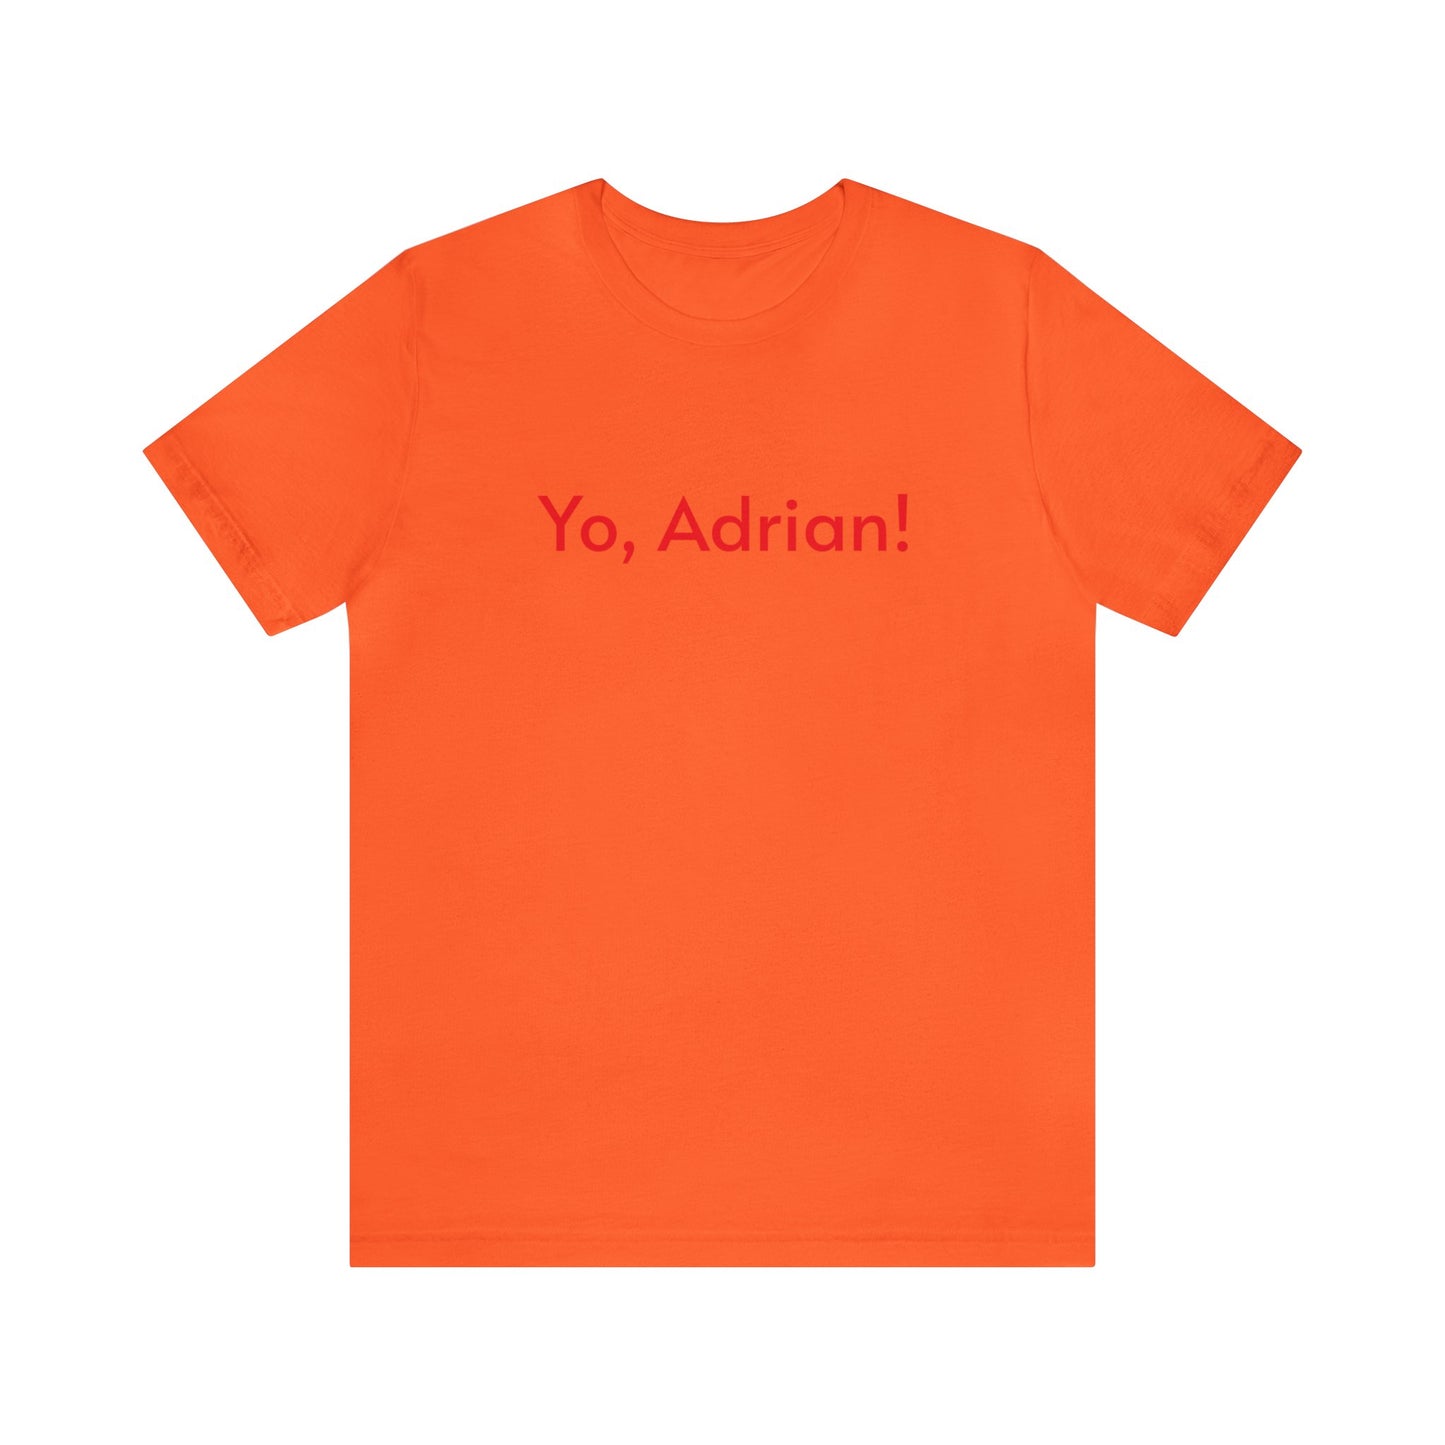 Yo Adrian!